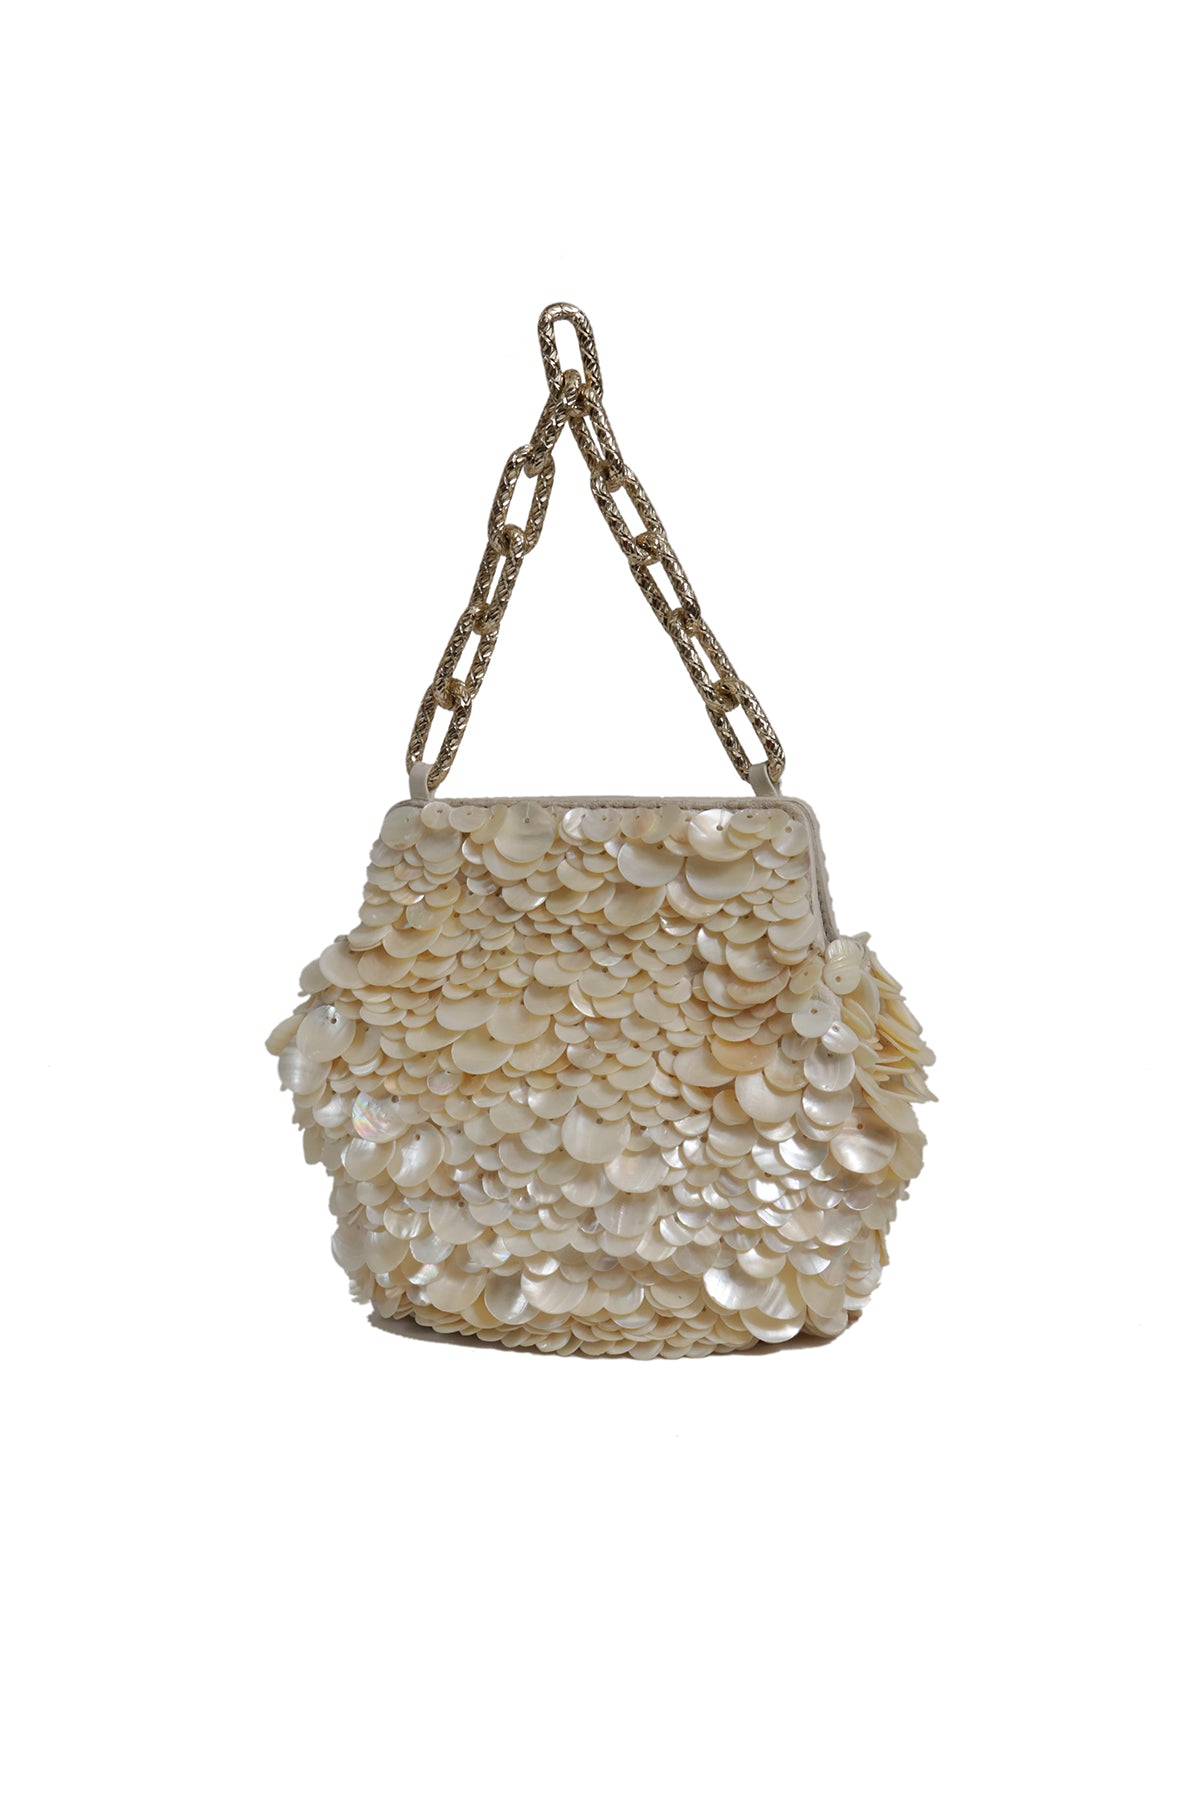 Mogra Embellished Potli Bag